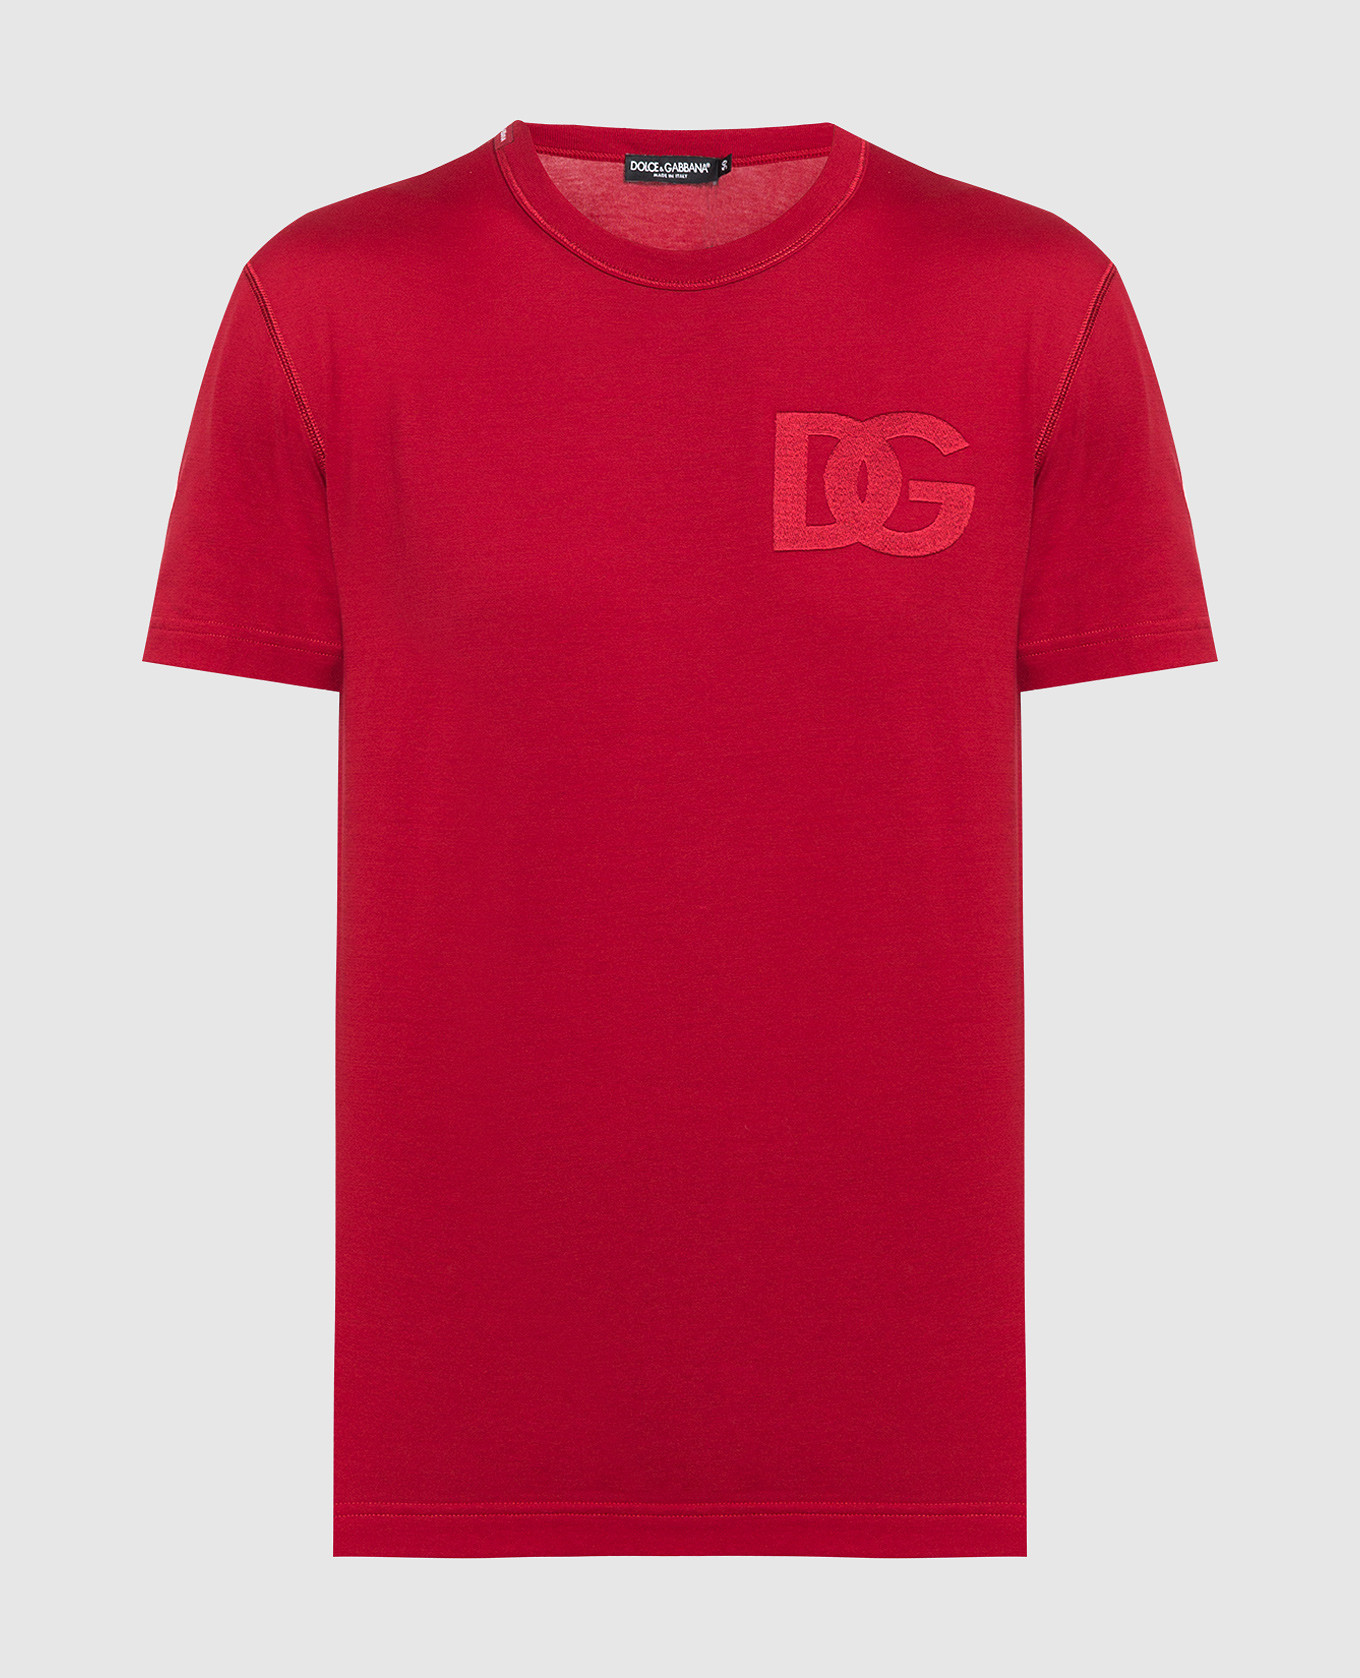 Красная футболка с вышивкой логотипа DG